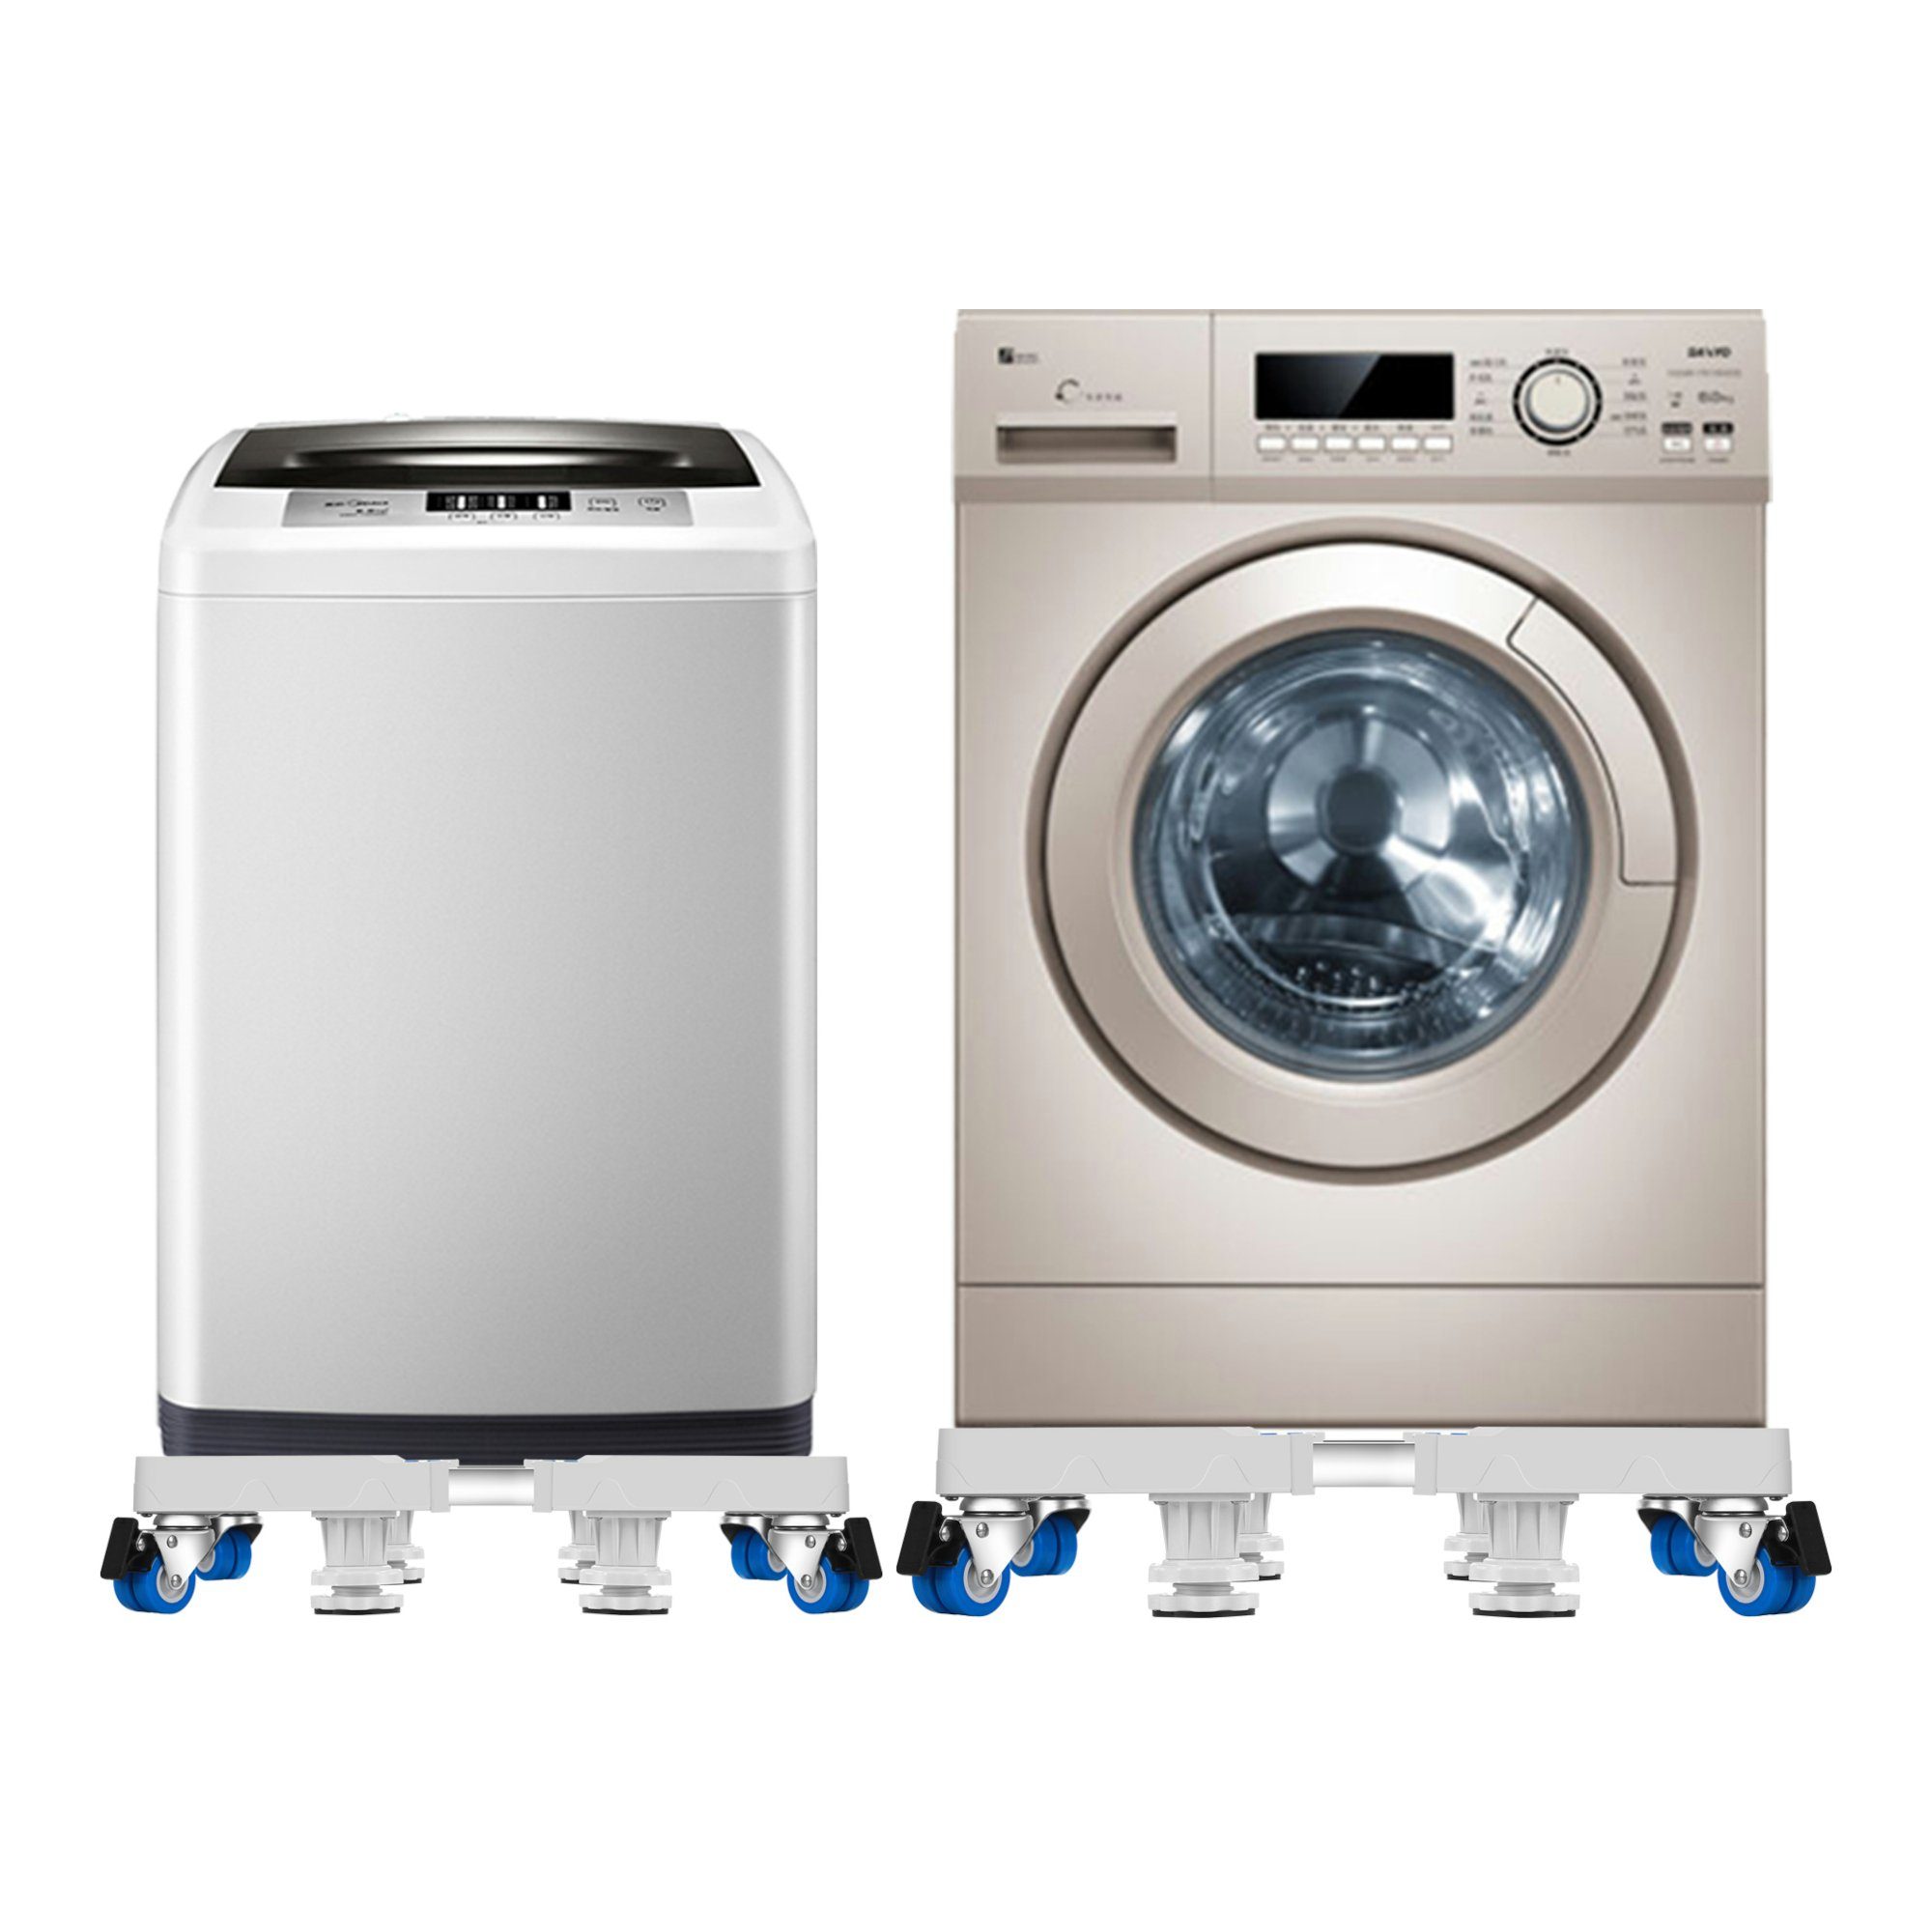 Weiß en.casa für Kella Großgeräte, Zubehör Waschmaschinenuntergestell, Waschmaschinen-Sockel